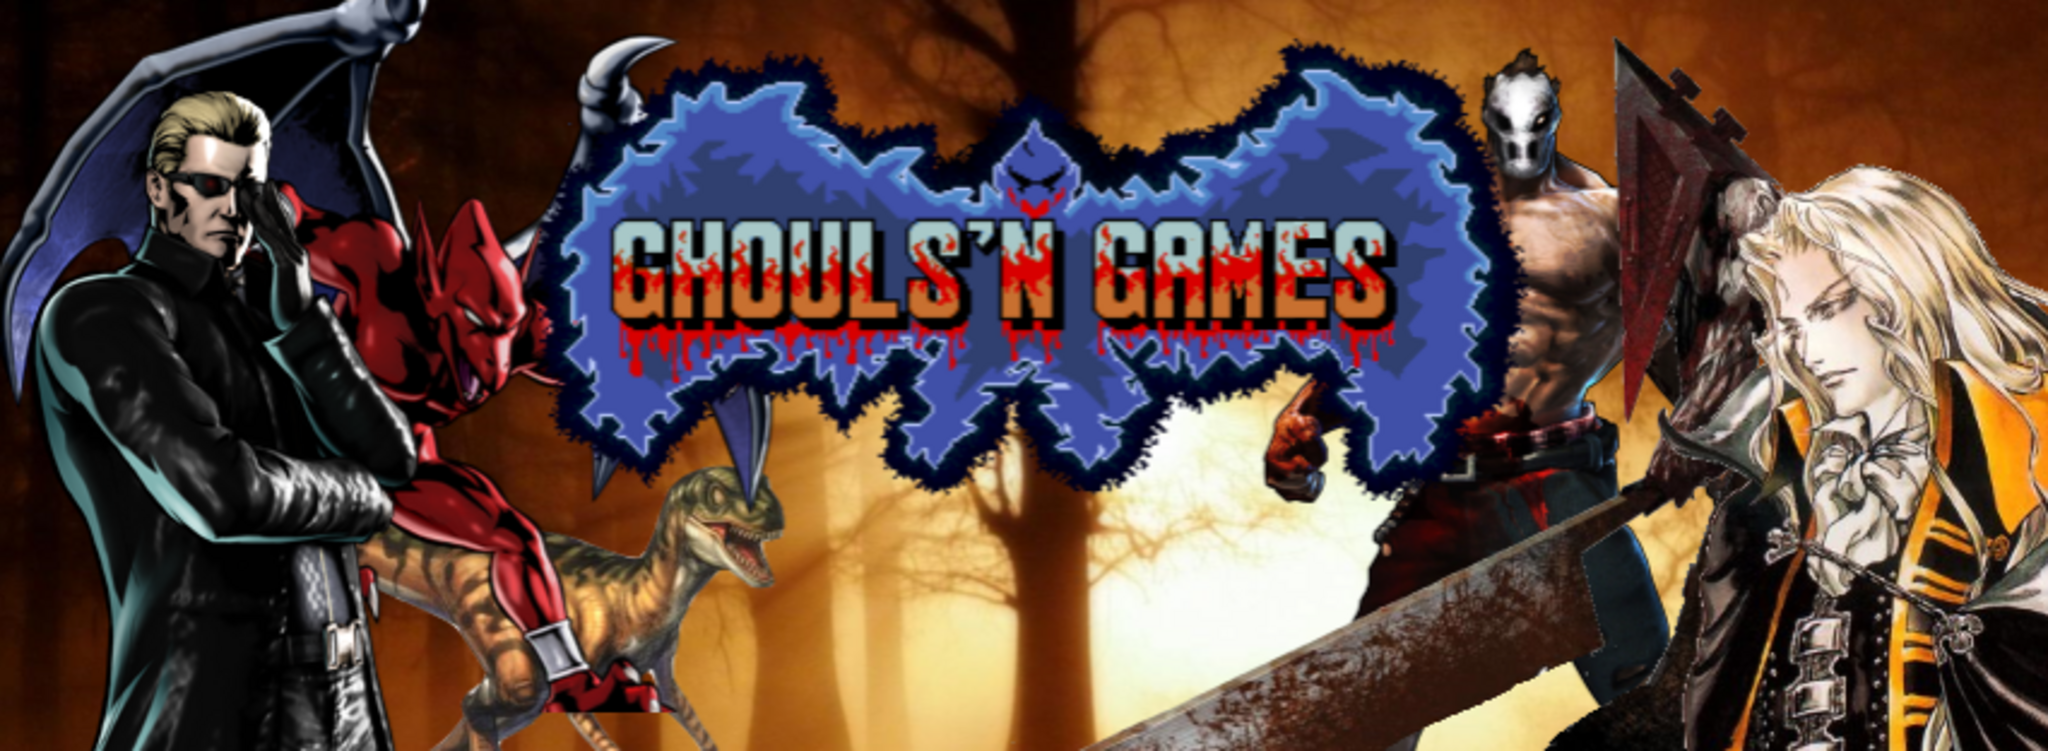 Ghouls 'n Games 2014